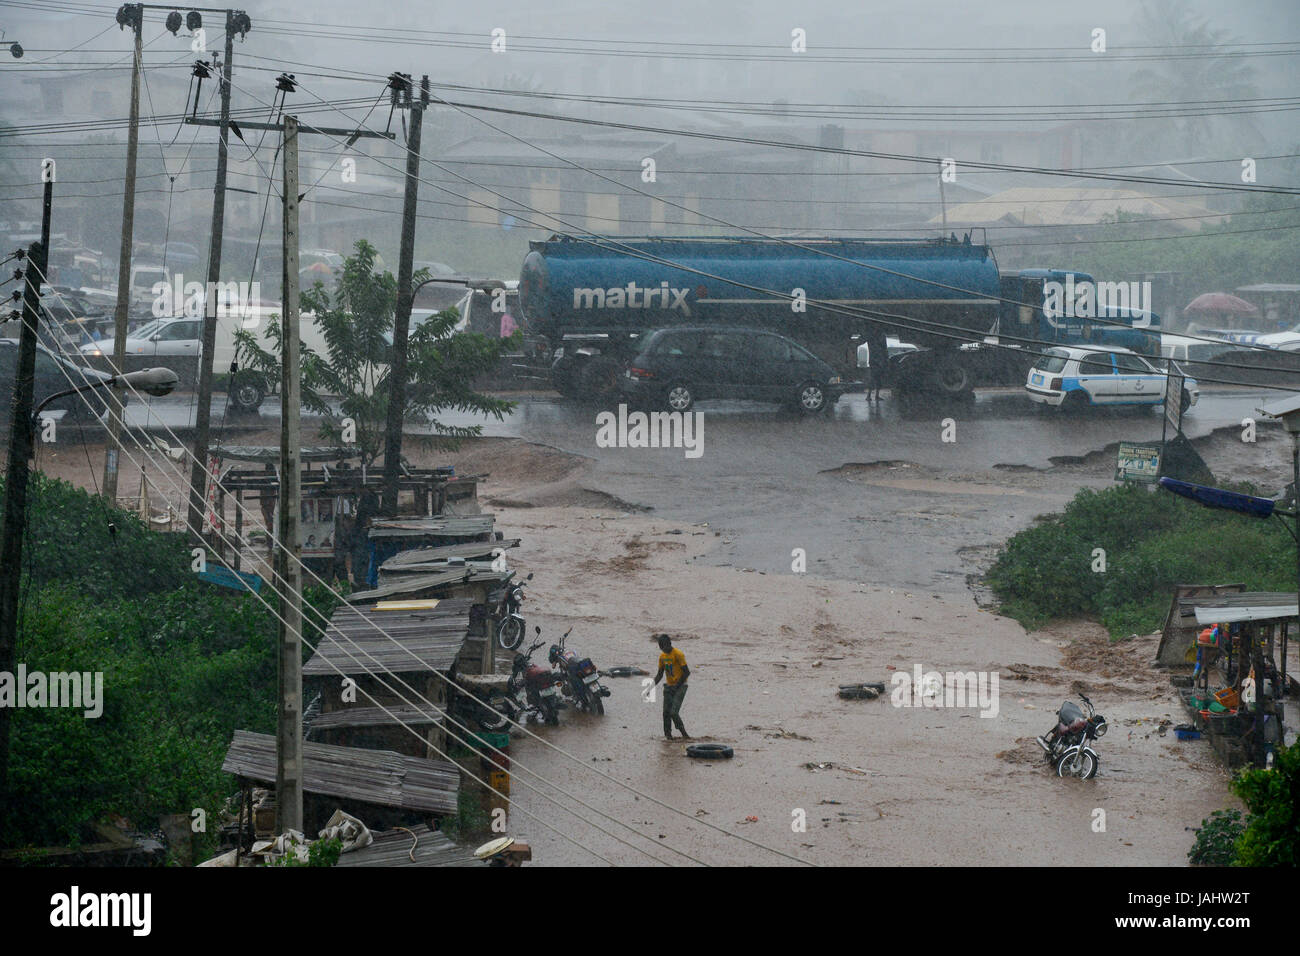 La Nigeria, stato di Oyo, Ibadan, autostrada Lagos - Ibadan durante la stagione di pioggia / Autobahn Ibadan - Lagos in der Regenzeit Foto Stock